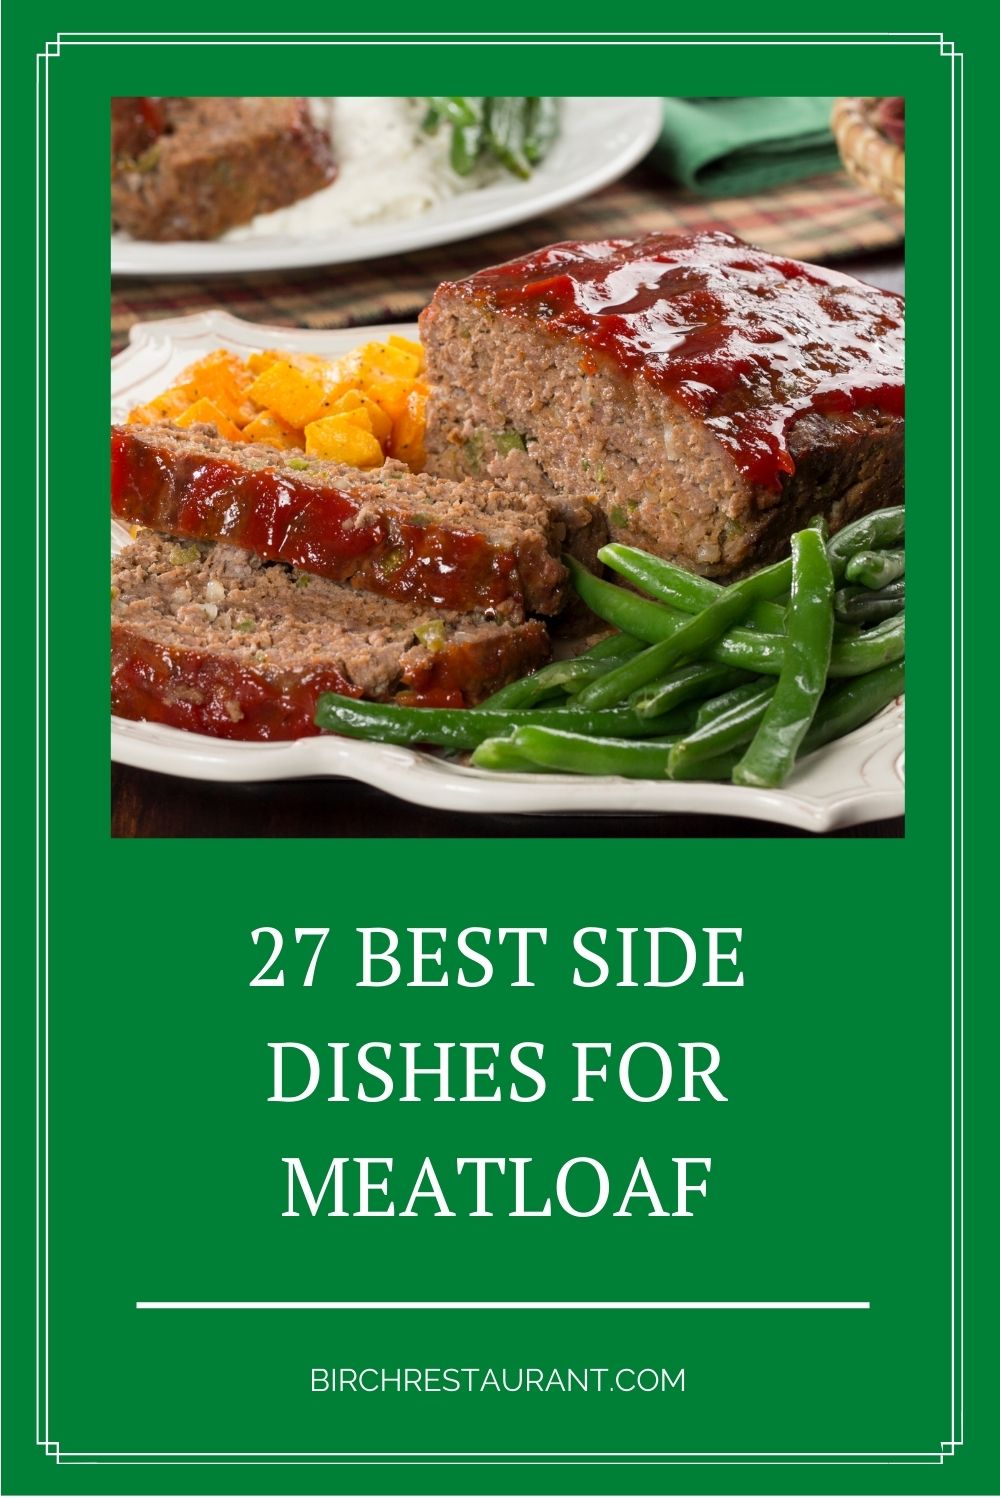 Best Side Dishes for Meatloaf